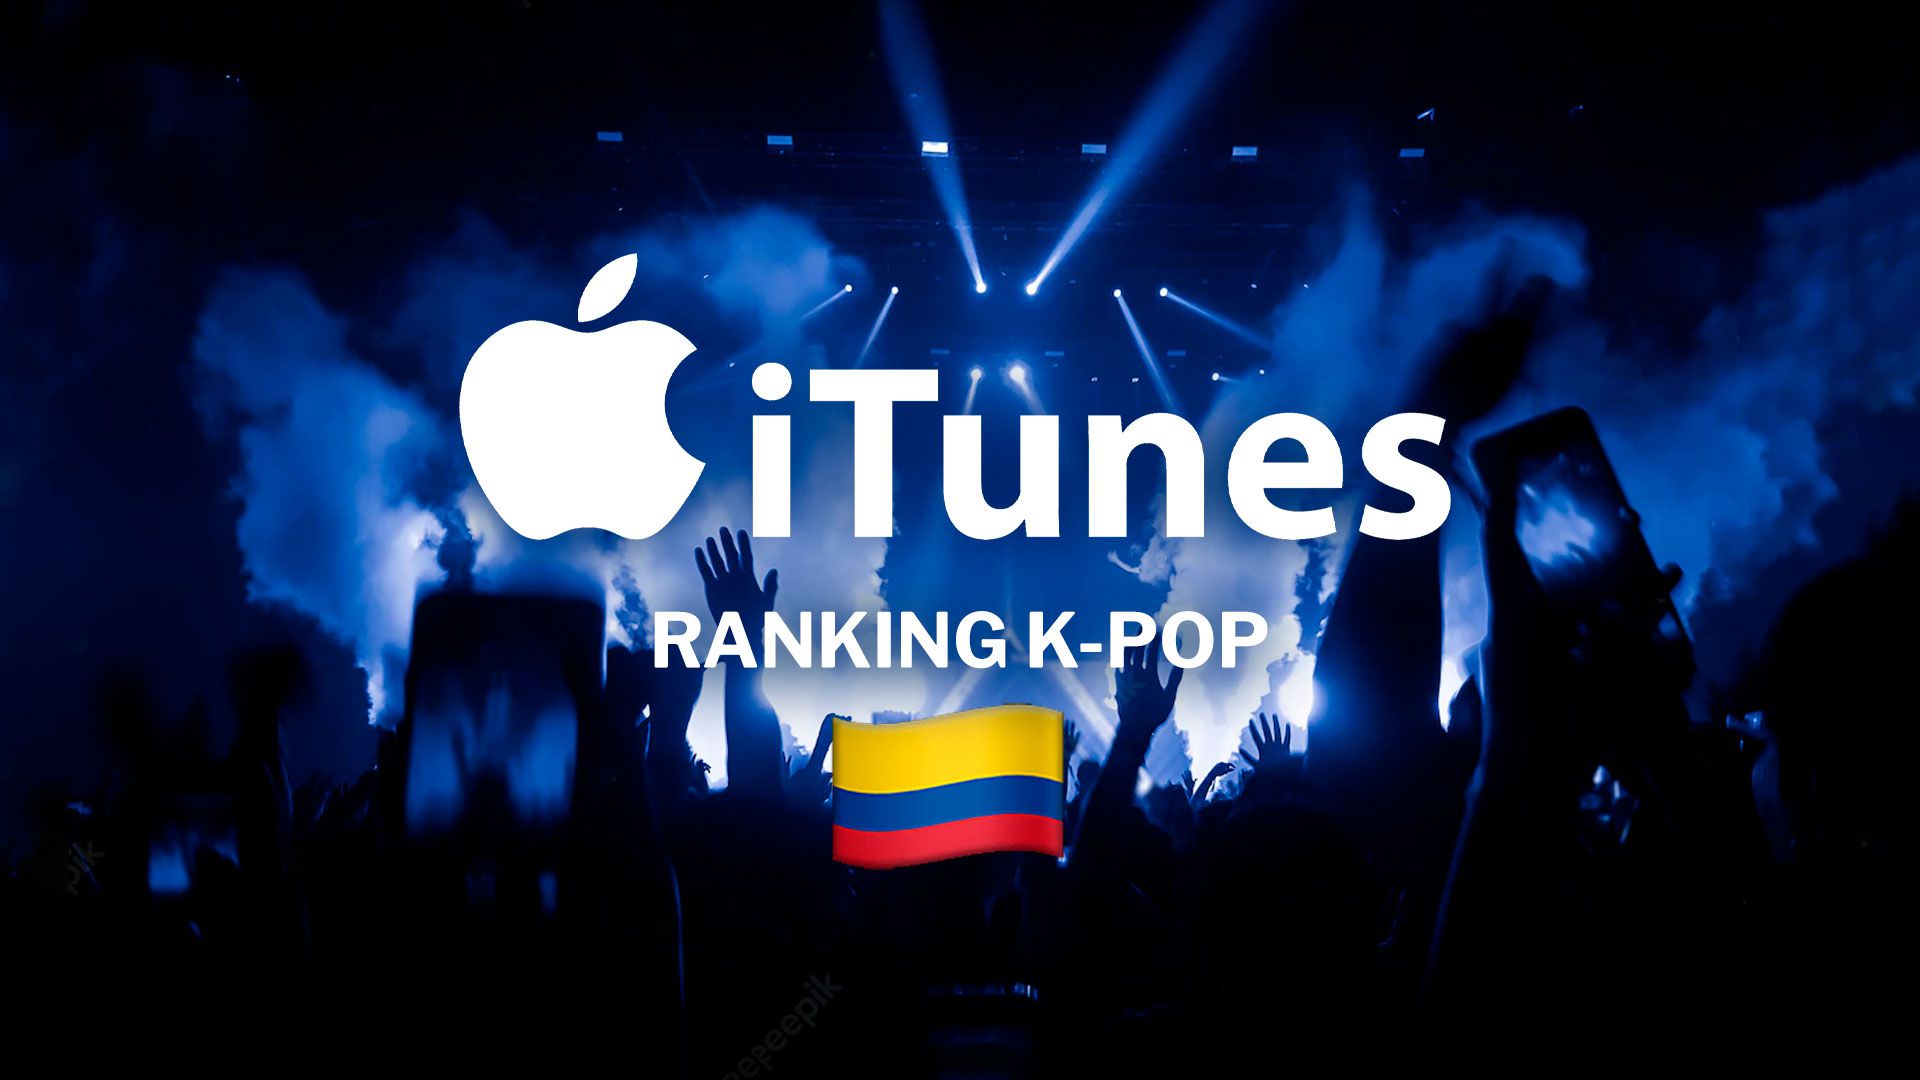 K-pop en iTunes: las 10 canciones más adictivas en Colombia